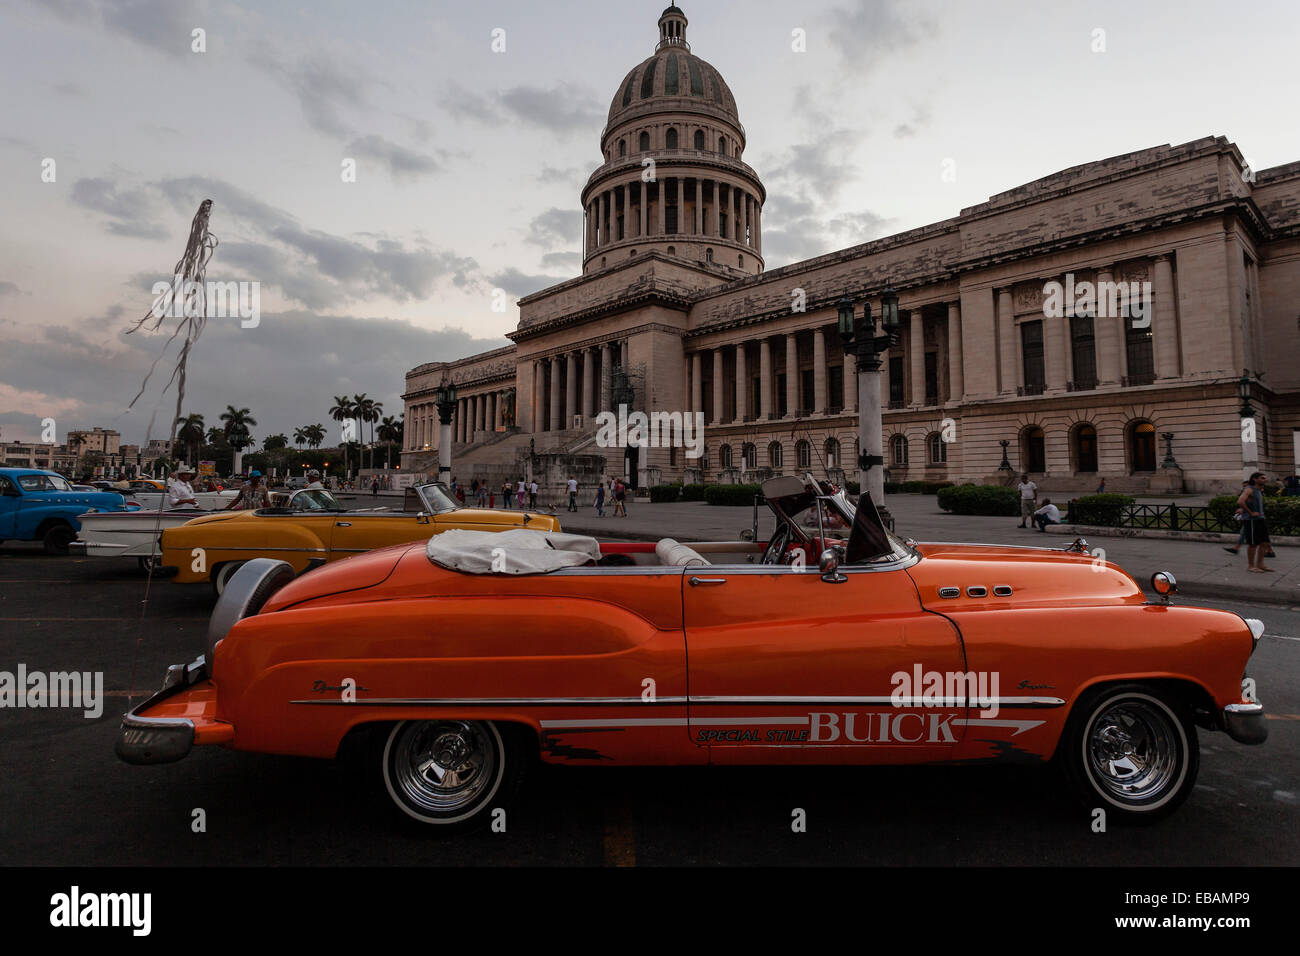 Vintage Buick dagli anni cinquanta di fronte al Campidoglio al crepuscolo, Havana, Cuba Foto Stock